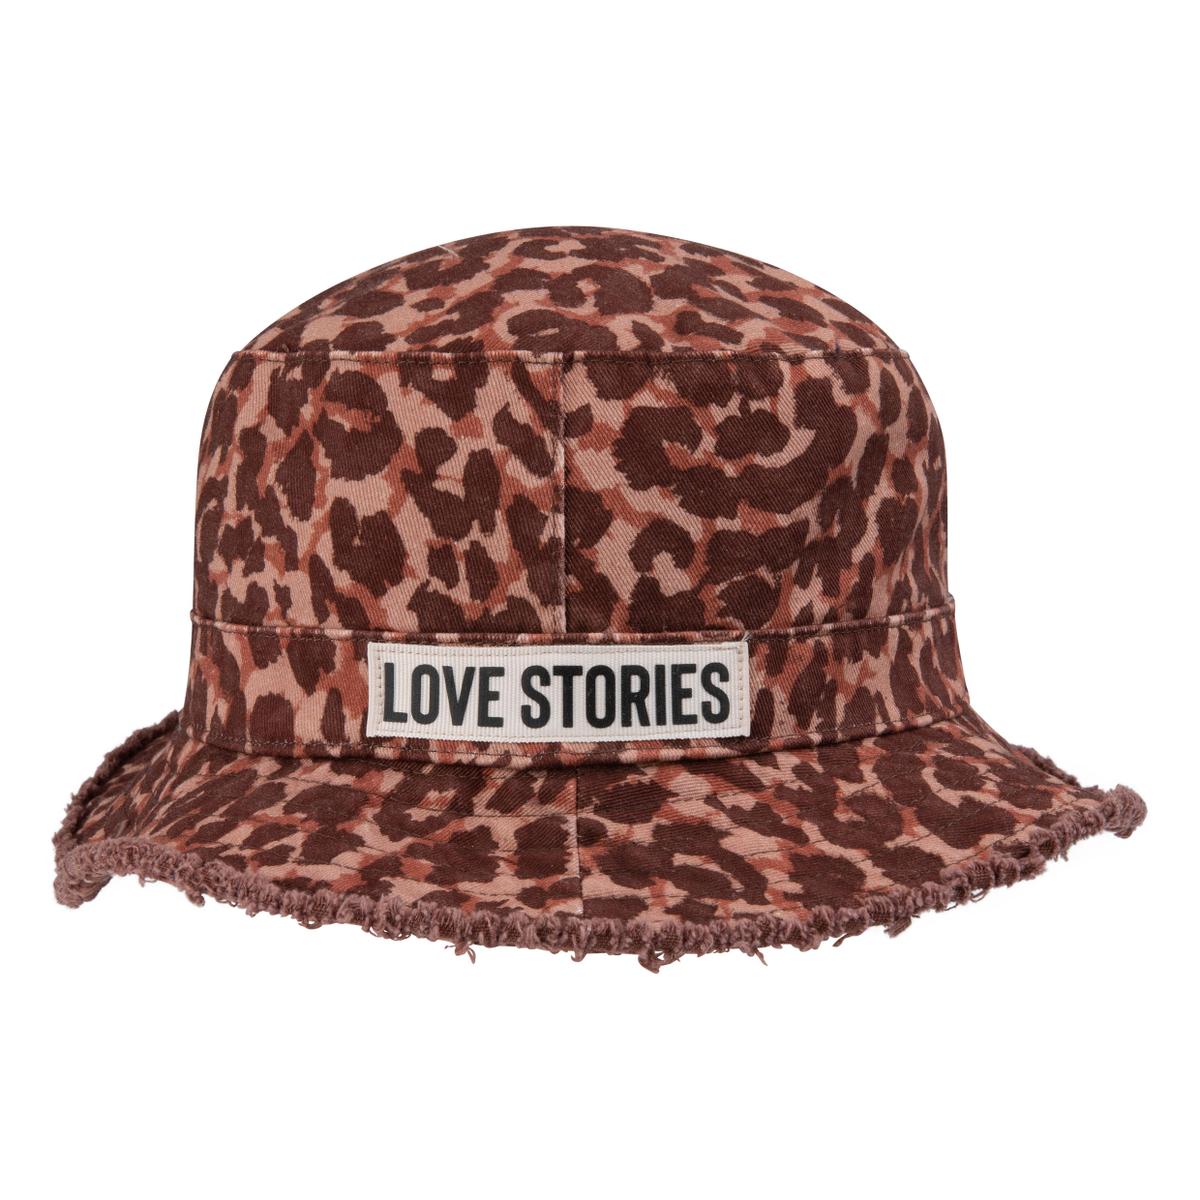 Love stories Bucket Hat